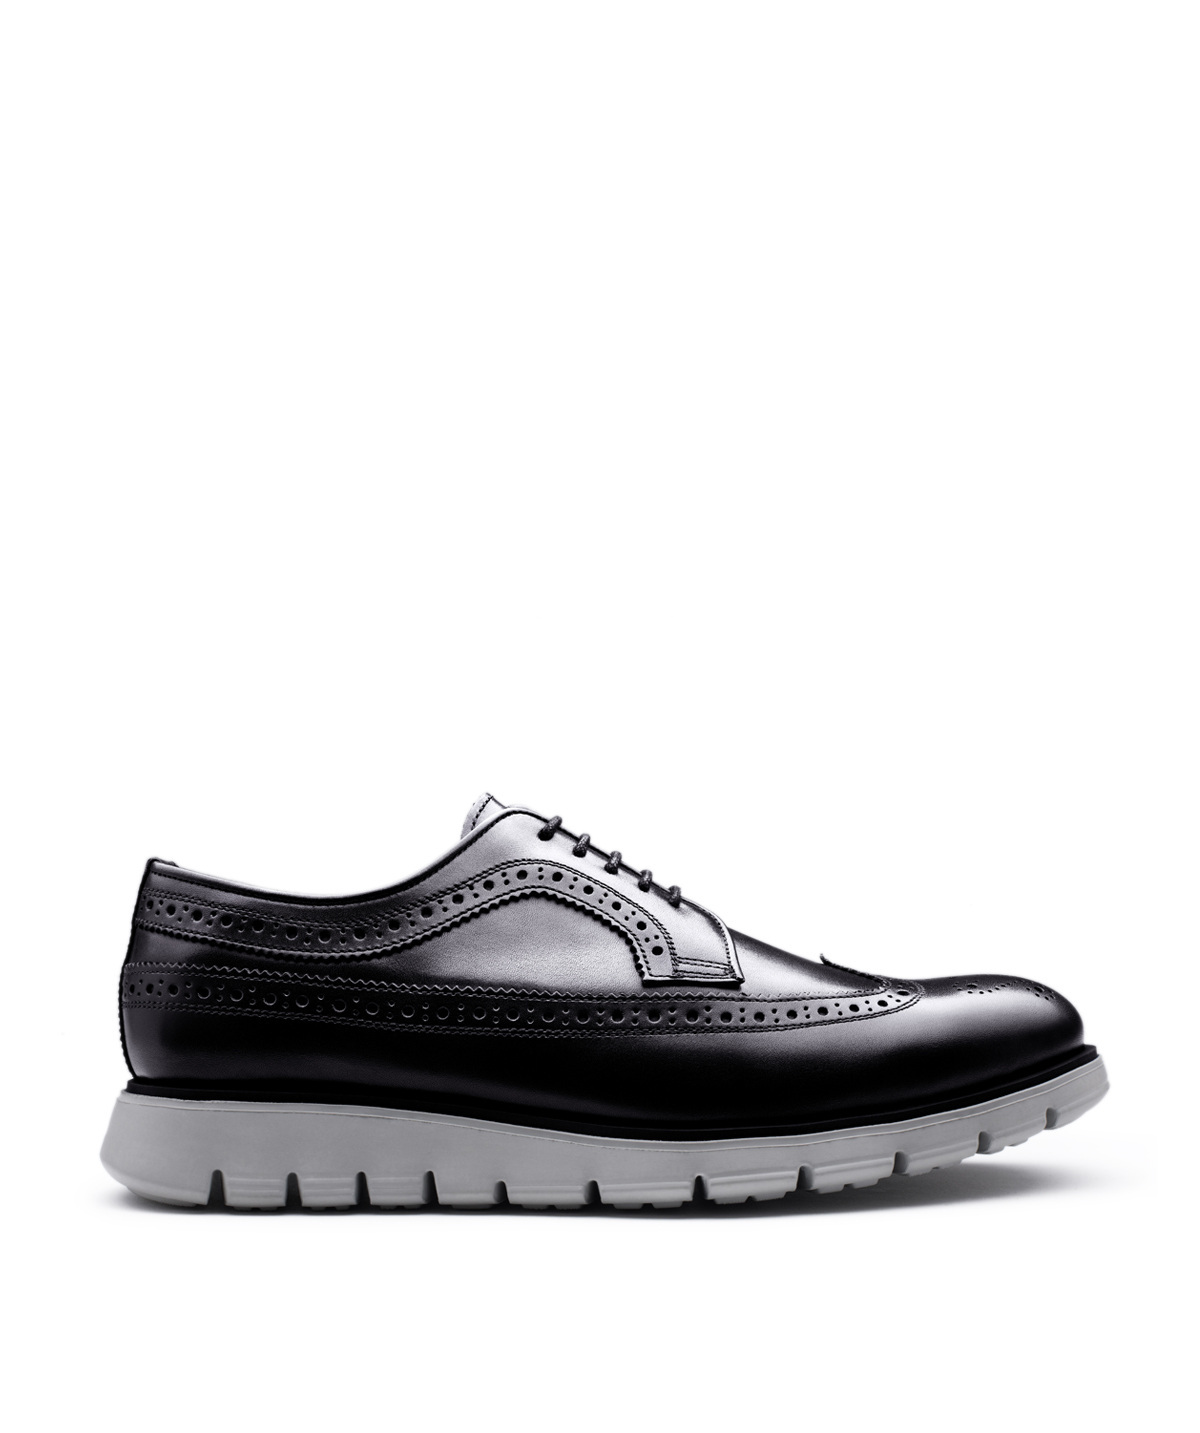 Derby Shoe for Men Leather Karl Black